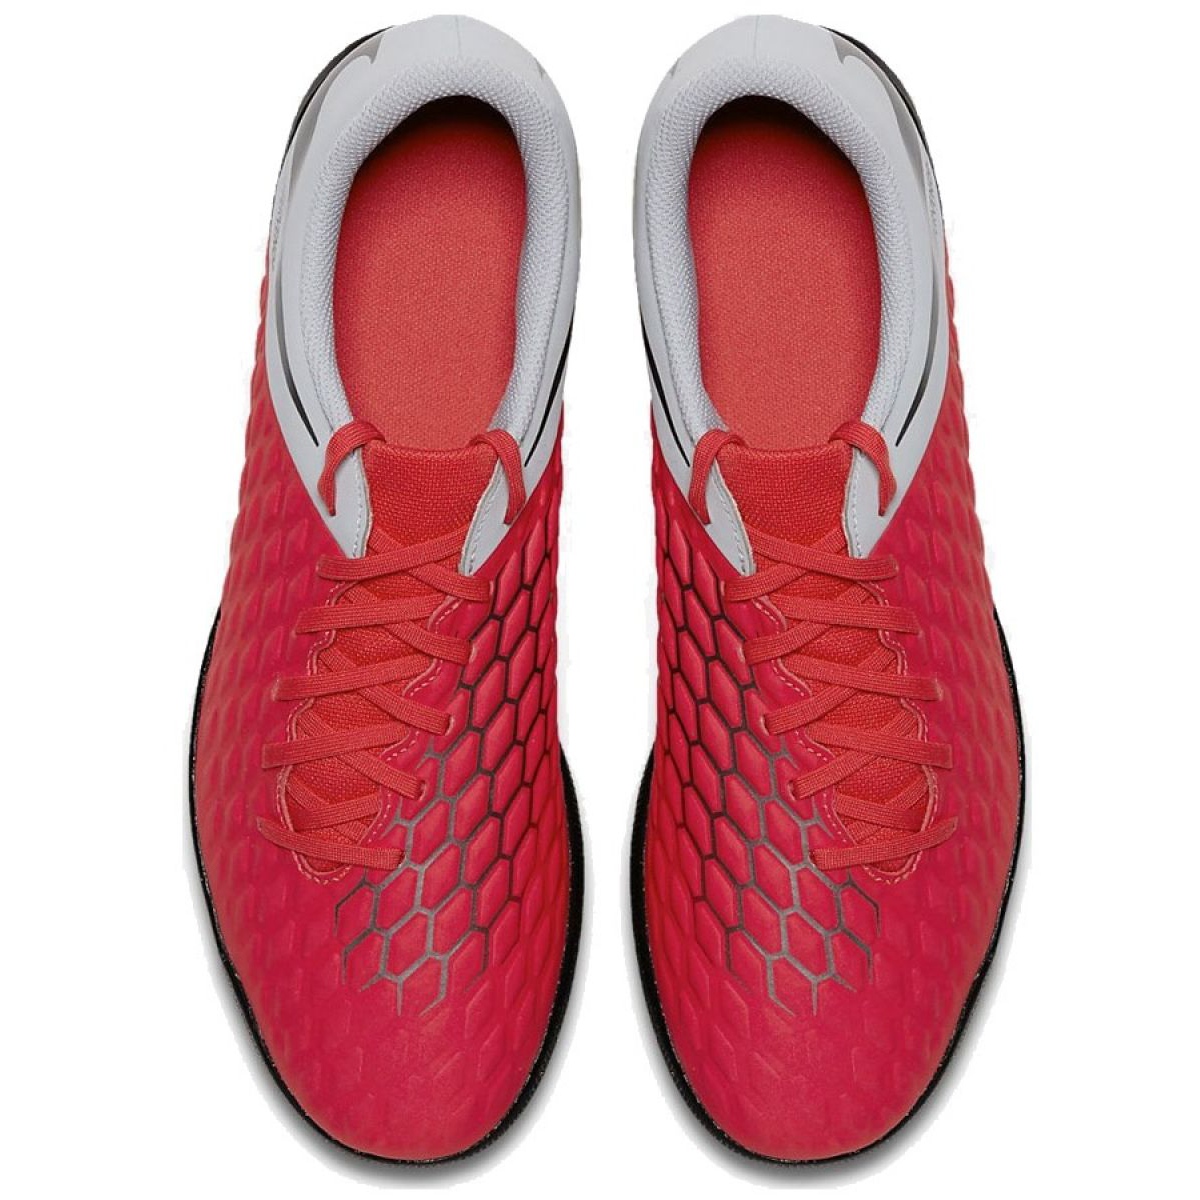 Implacable De vez en cuando carencia Indoor shoes Nike Hypervenom Phantomx 3 Club Ic M AJ3808-600 red red -  KeeShoes